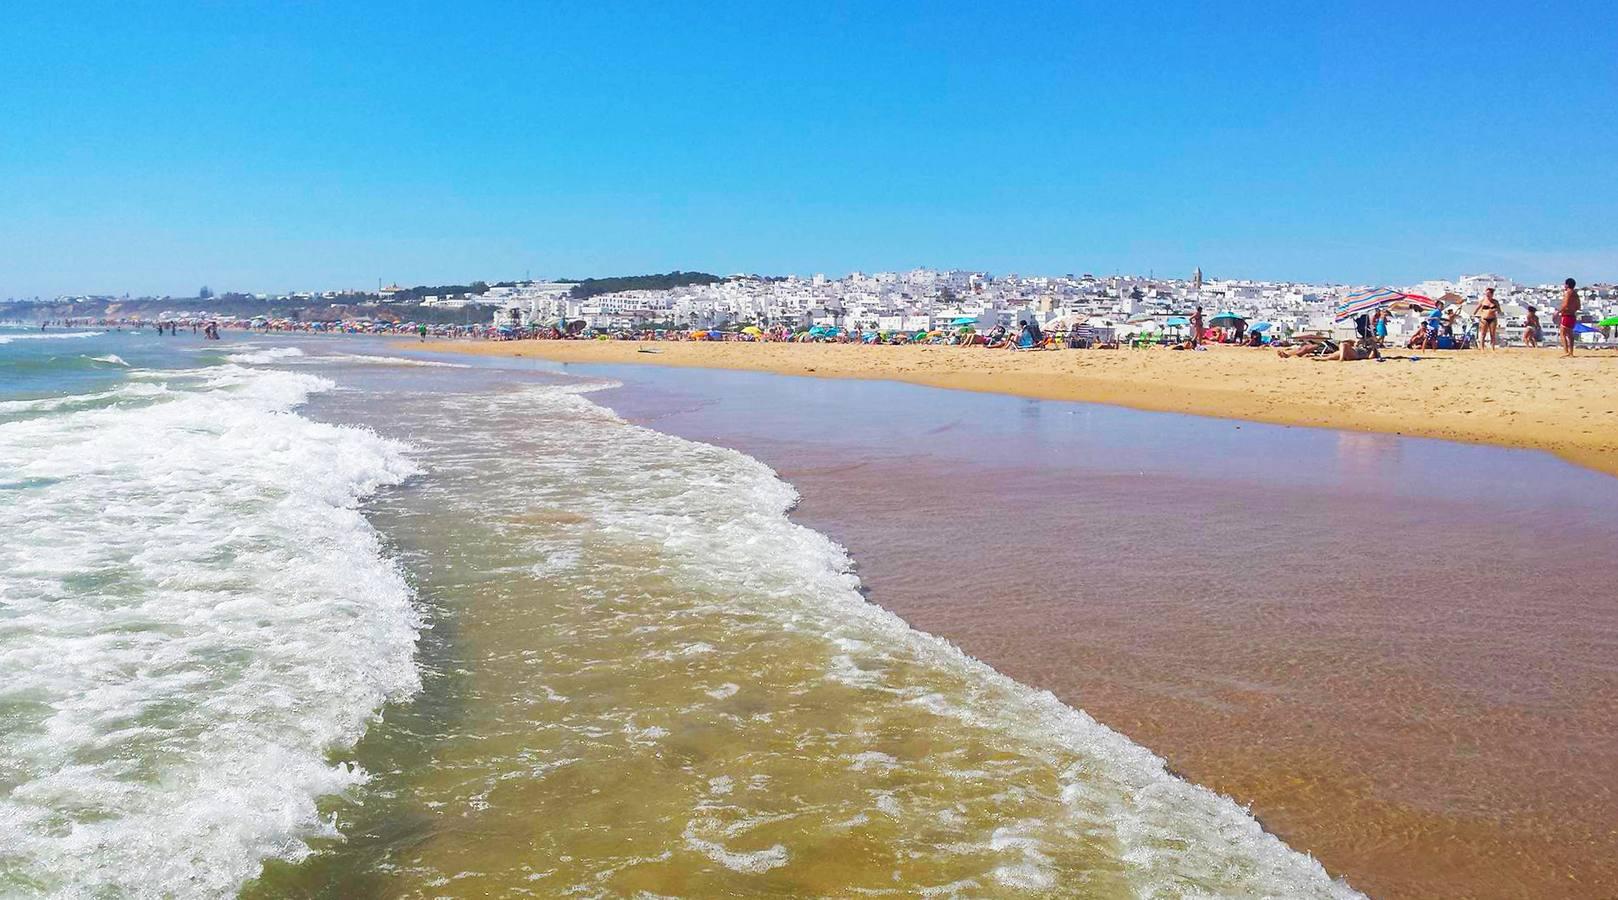 FOTOS: ¿Cuál es tu imagen favorita de las playas de Cádiz?